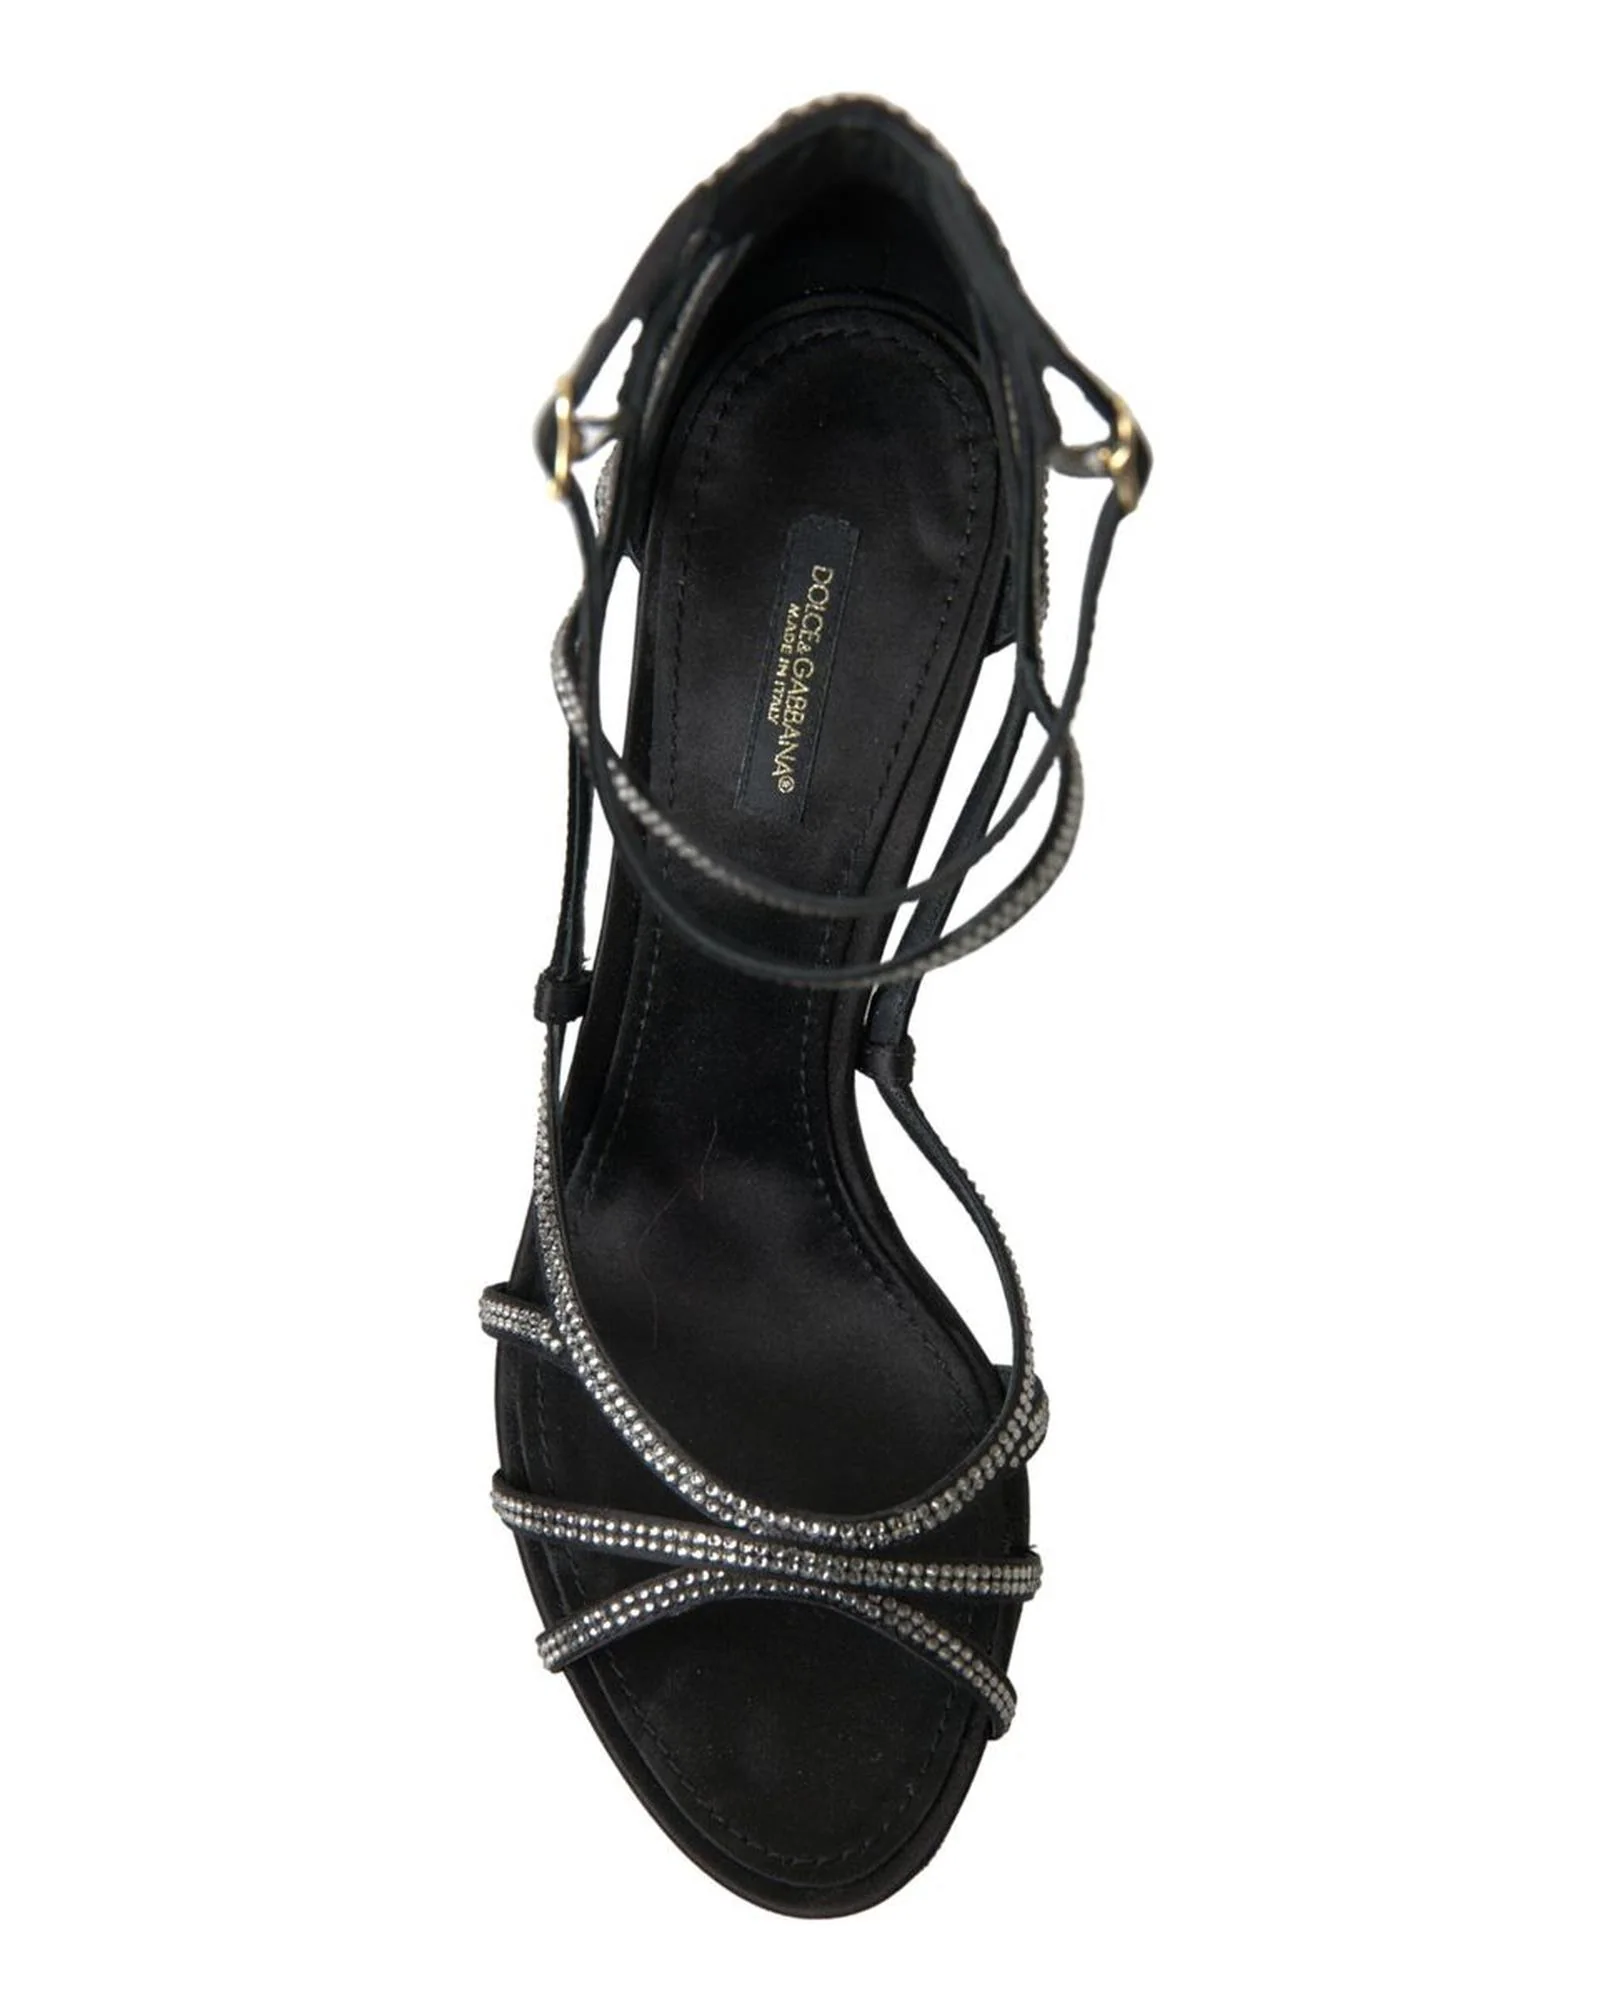 돌체앤가바나 돌체앤가바나 Dolce & Gabbana Rhinestone Stiletto Sandal Shoes 7221401419908